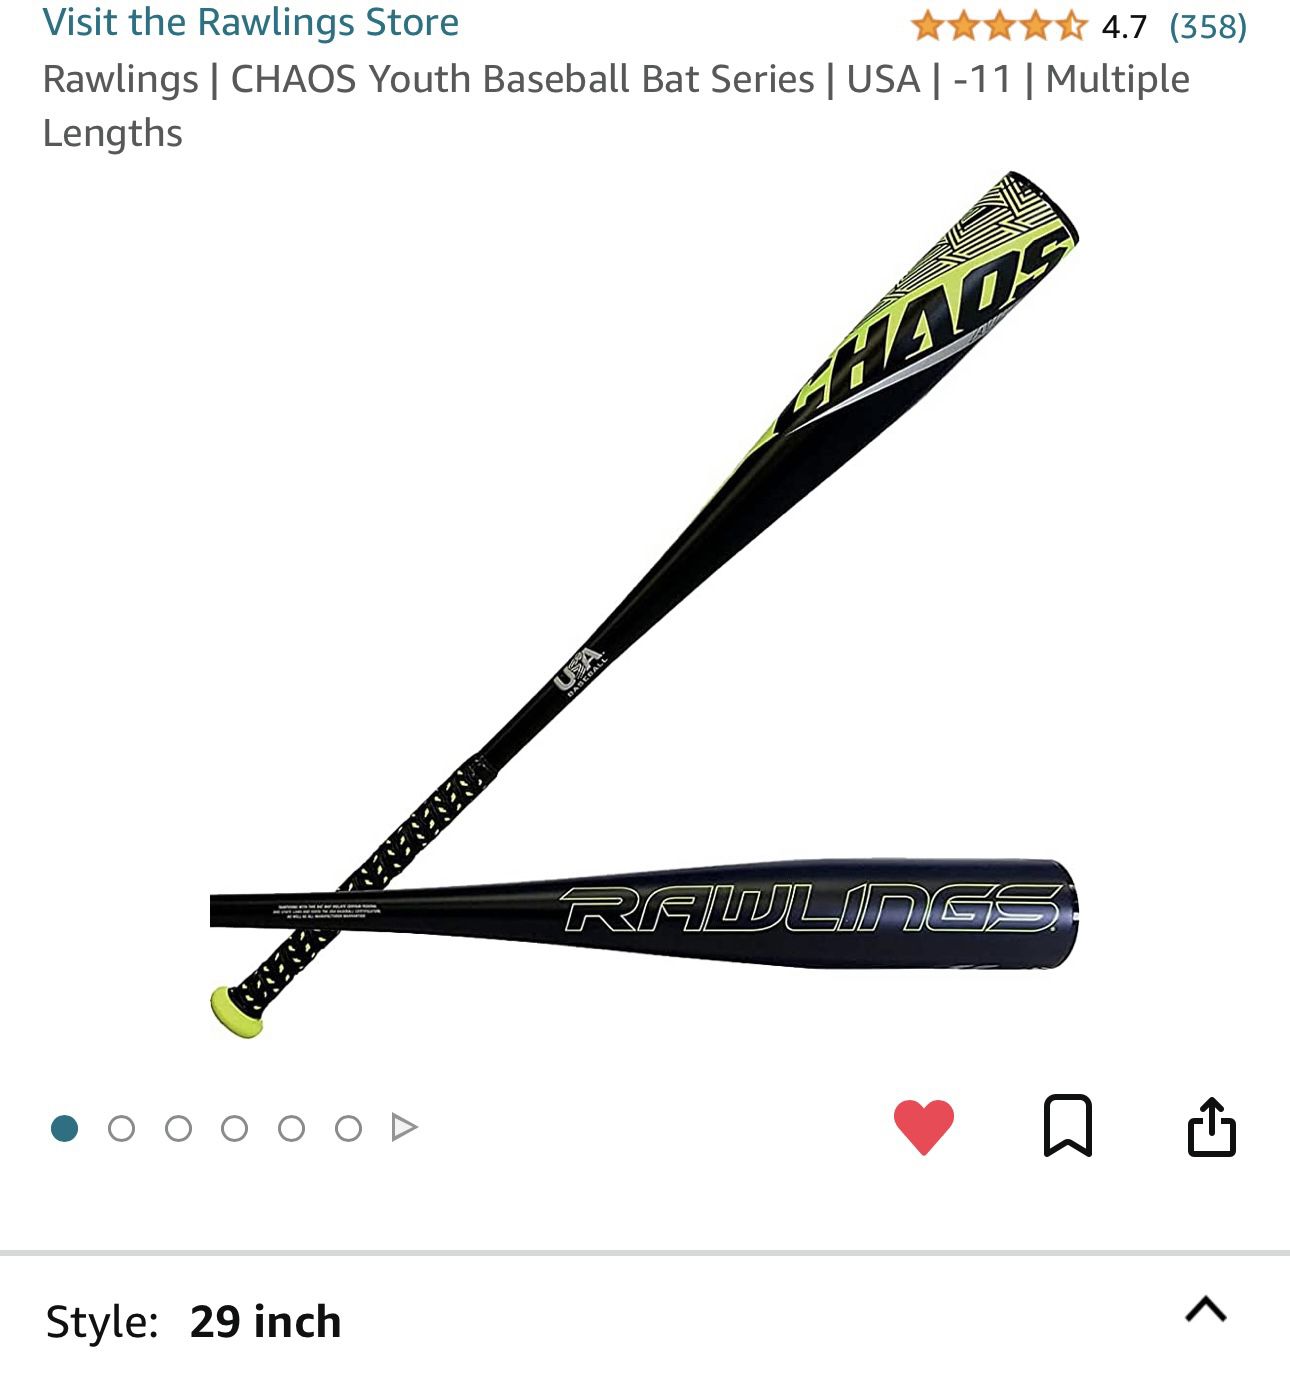 Rawlings | CHAOS Youth Baseball Bat Series 29”